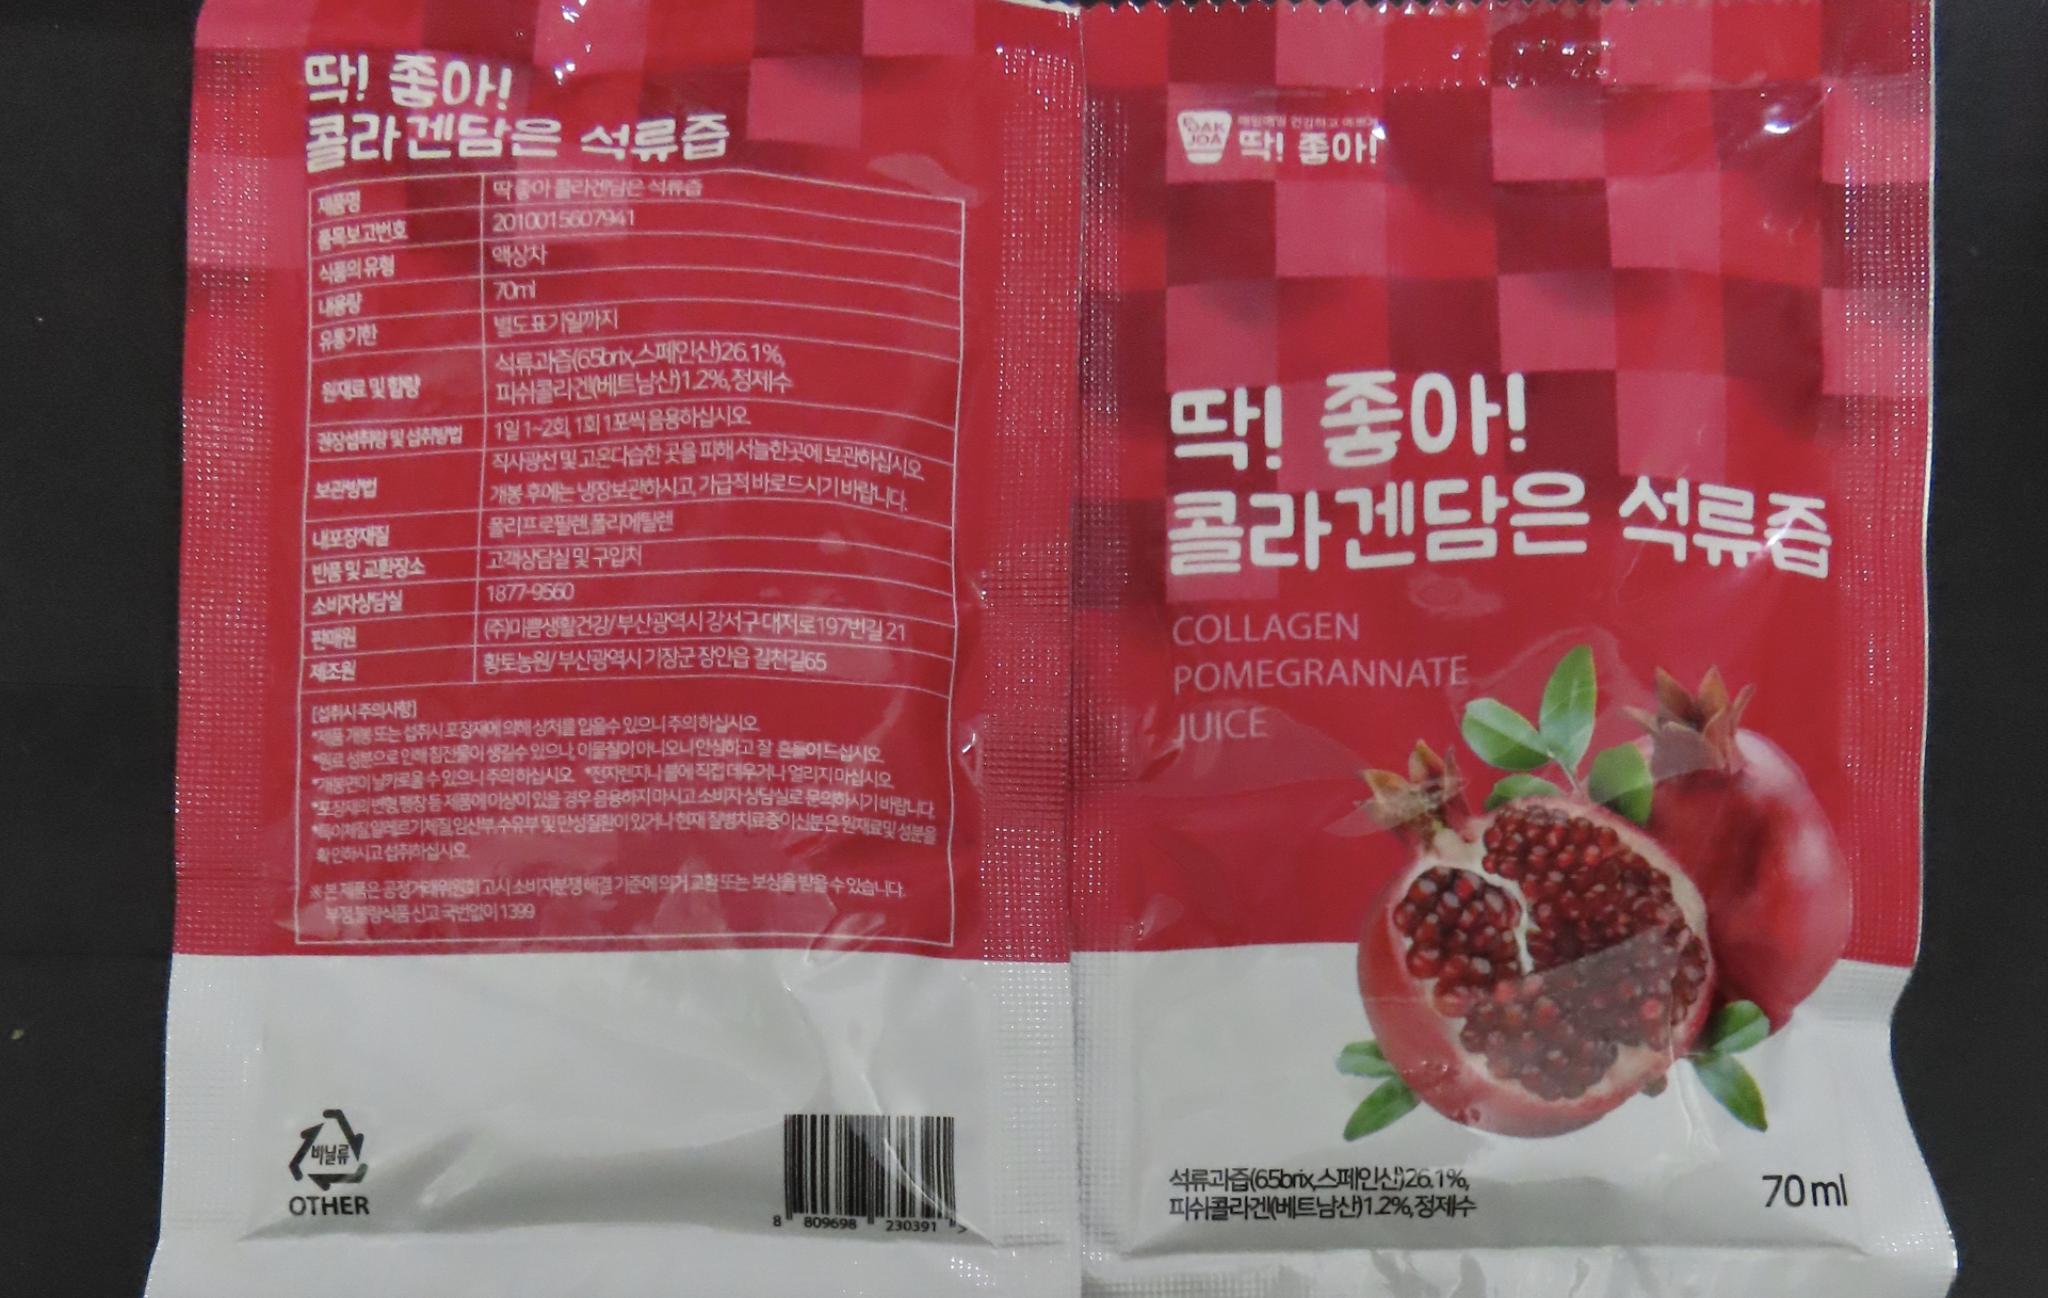 韓熱銷美顏飲「DDakjoa石榴汁」出包！違添糖精   食藥署抓包近4千公斤